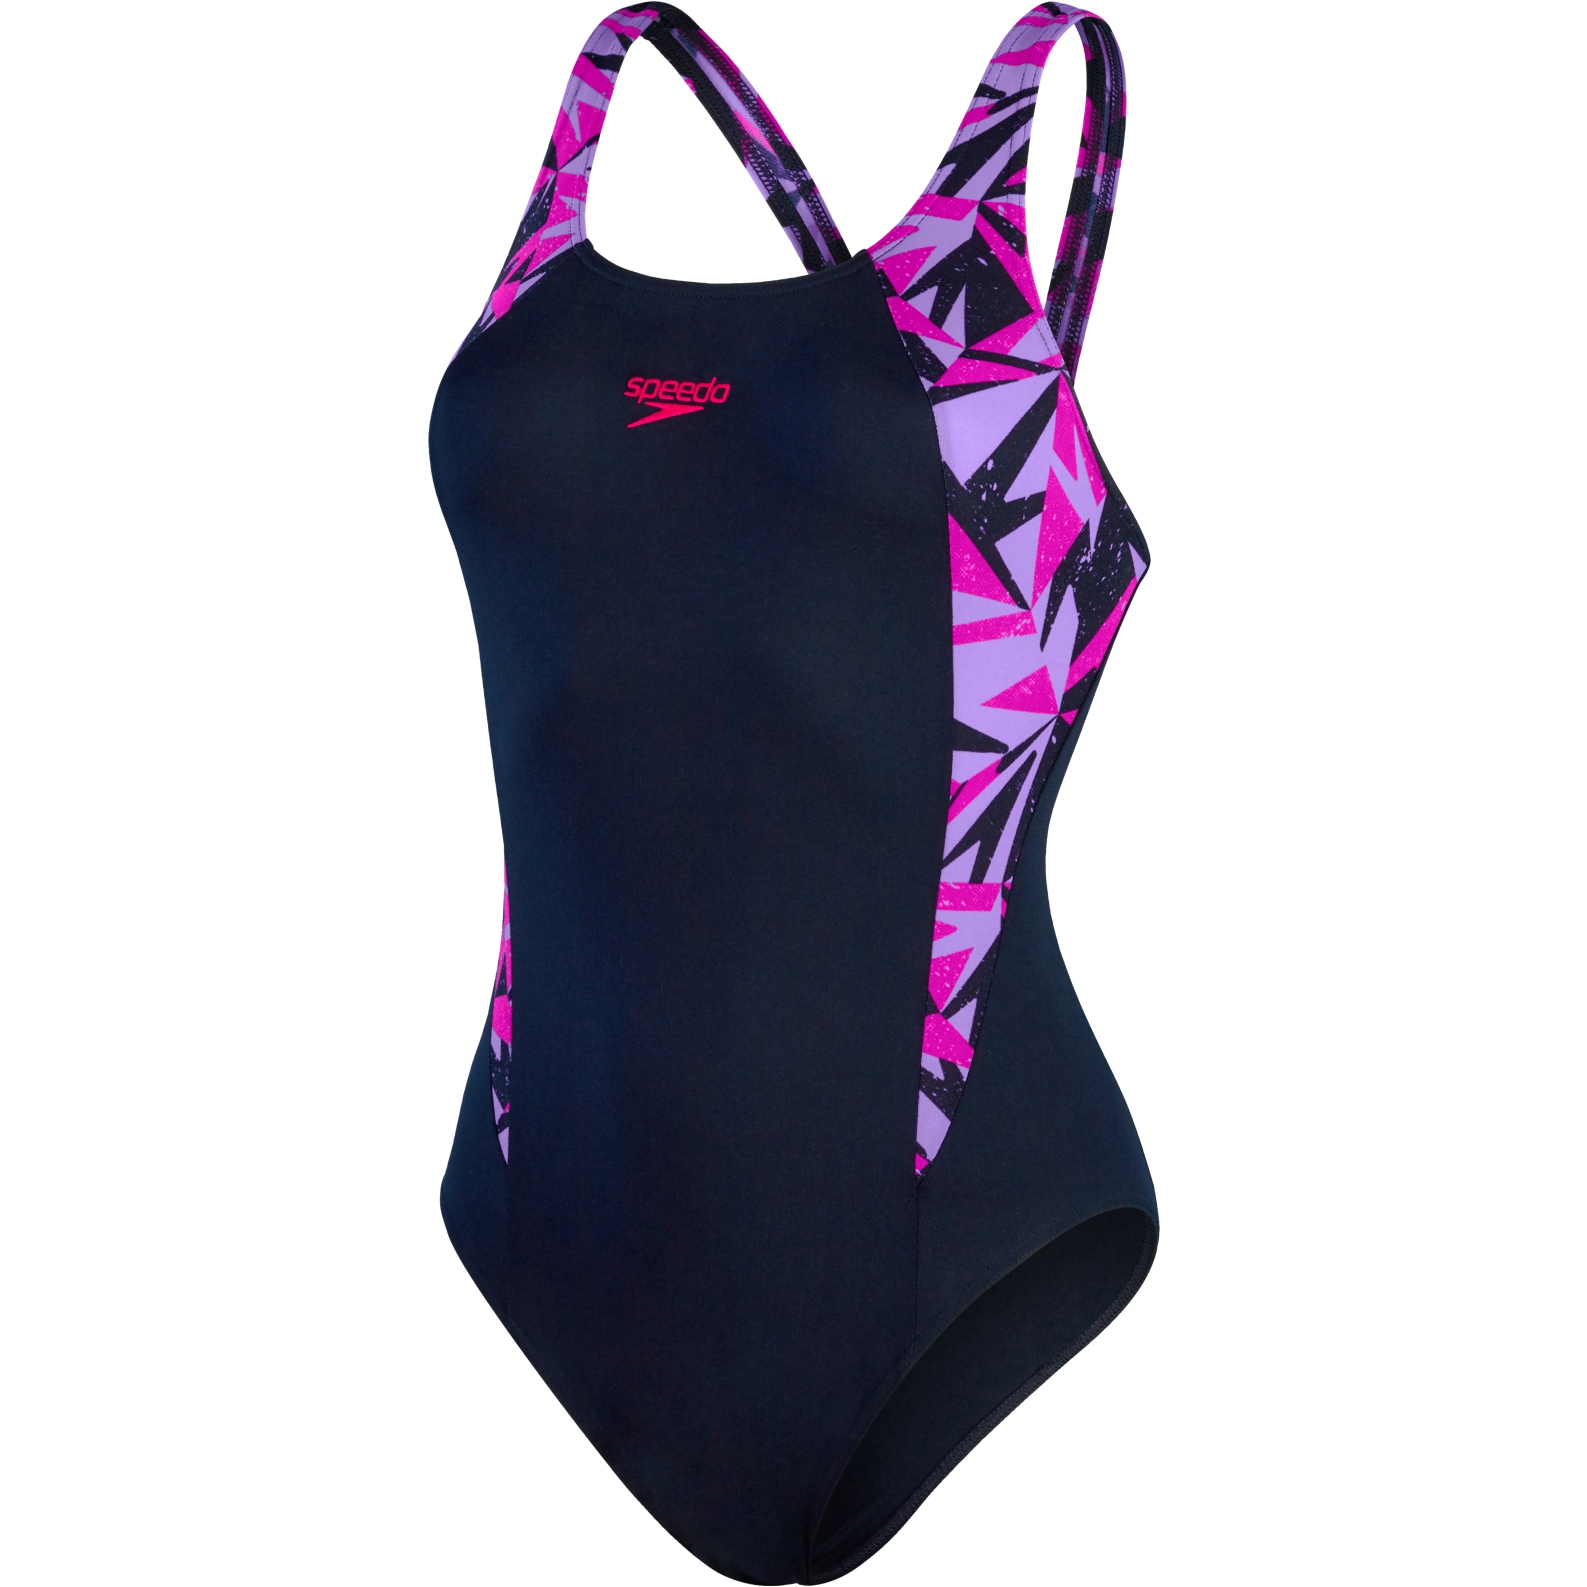 Produktbild von Speedo Hyper Boom Splice Muscleback Badeanzug Damen - true navy/berry/miami lilac